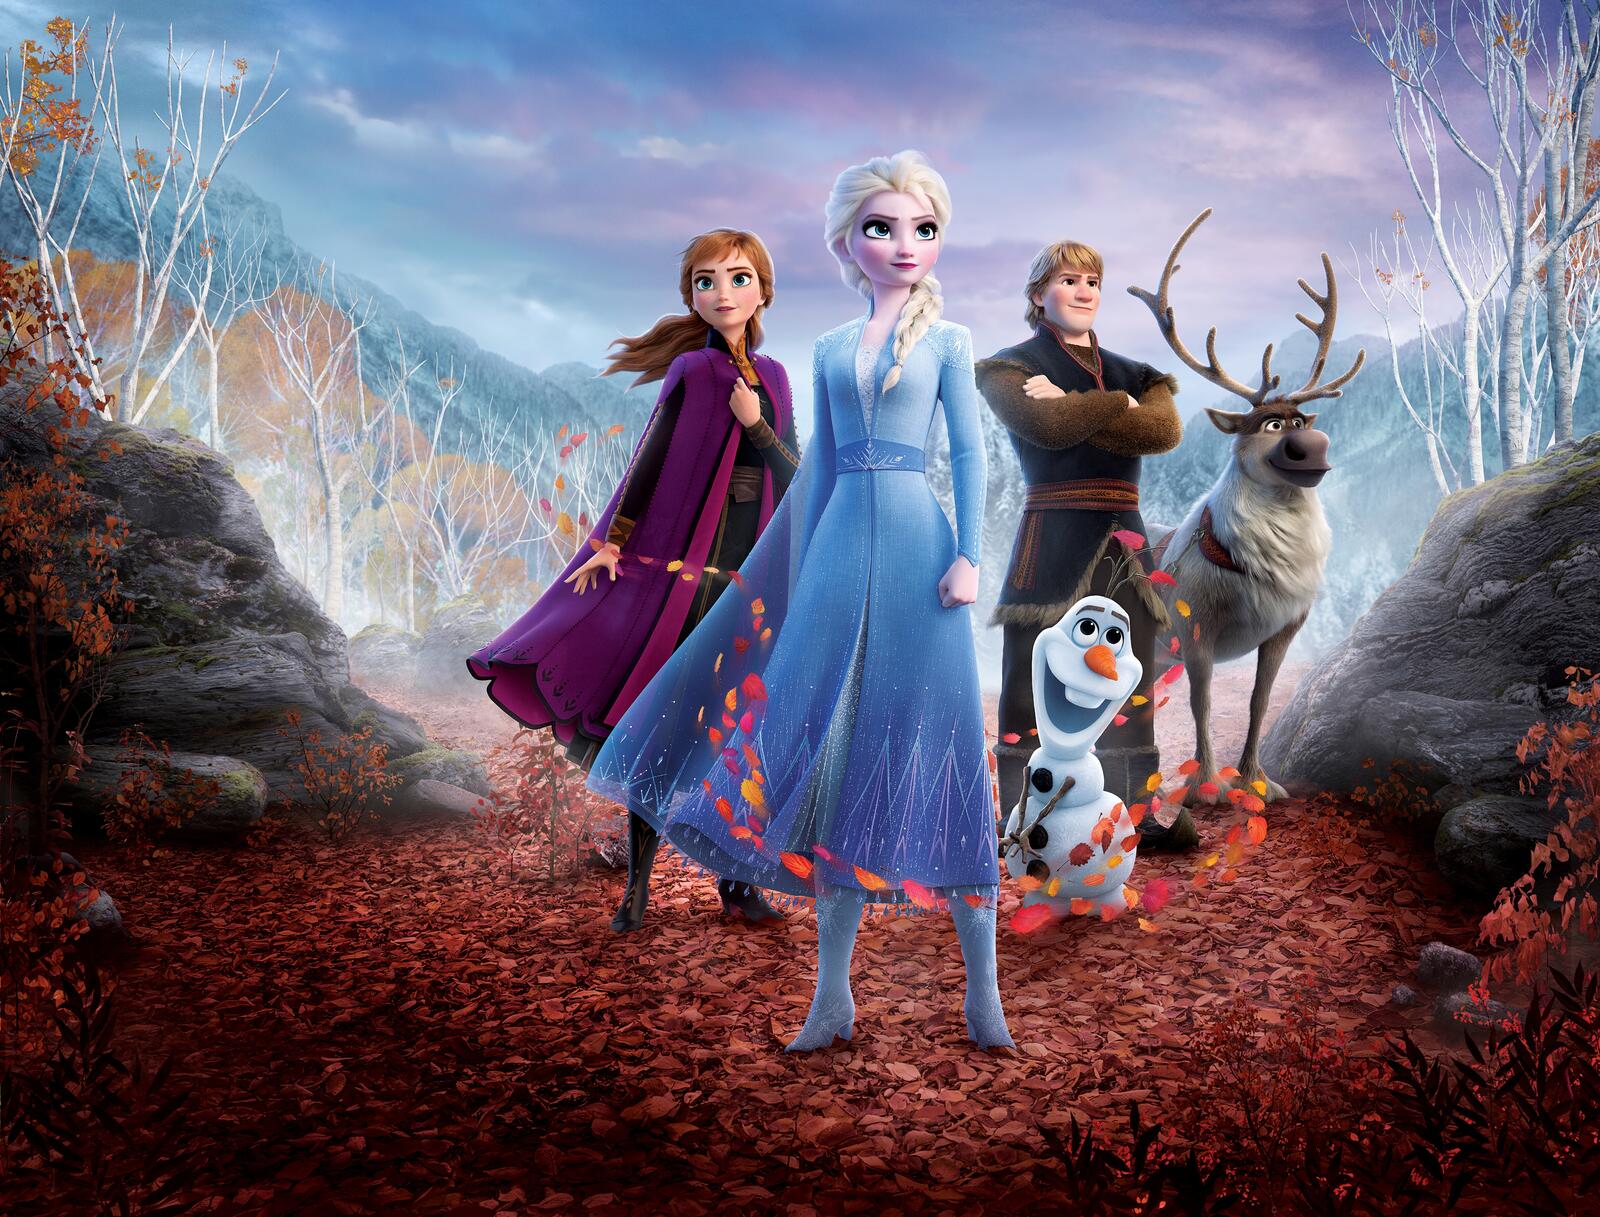 Wallpapers queen Elsa Frozen 2 Anna on the desktop